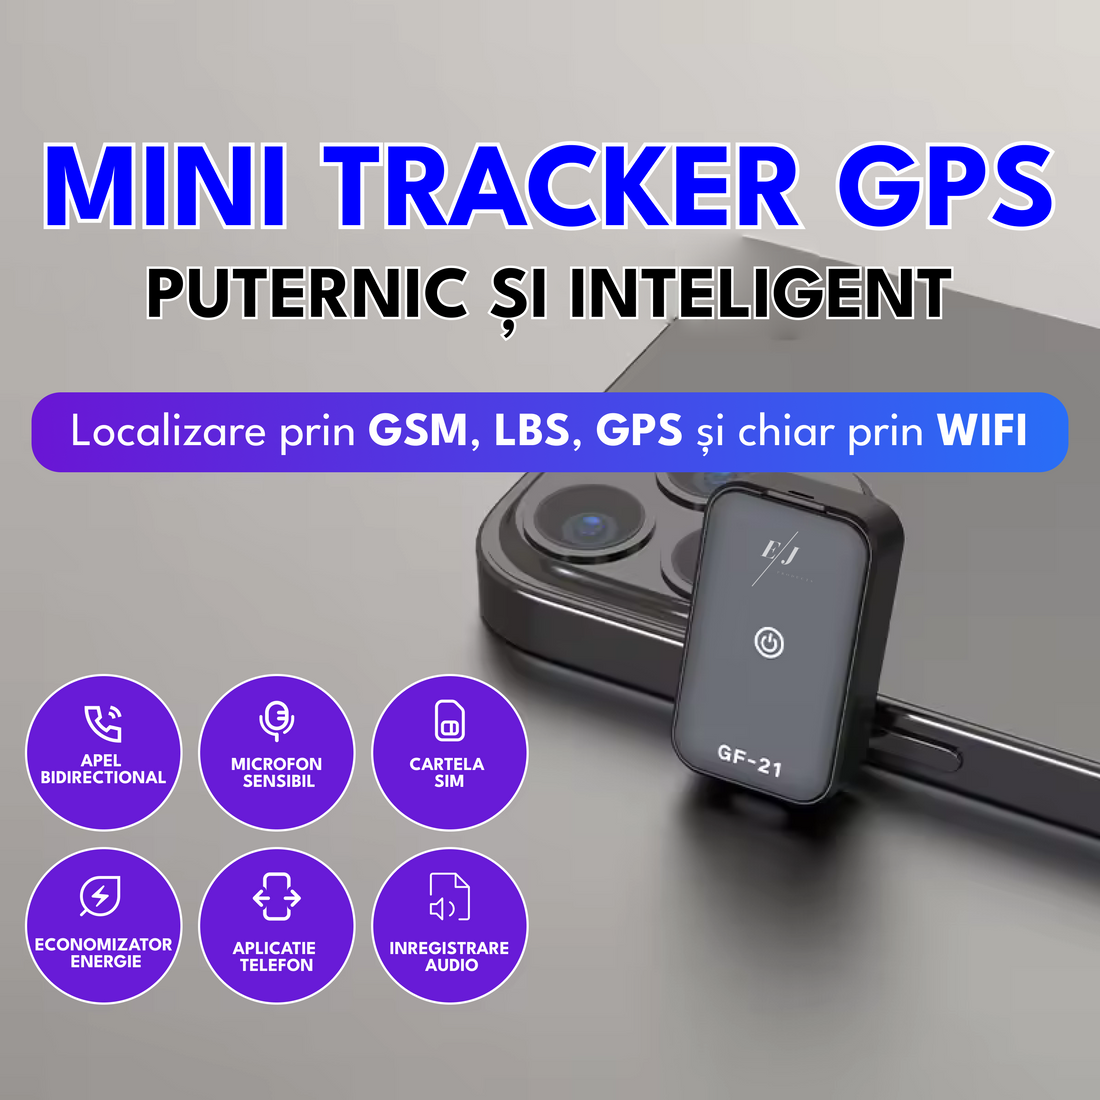 Mini tracker GPS, GF21, localizare LBS+GPS+GSM+WIFI, activare vocala, alerta SOS, autonomie 6 zile, standby 10 zile